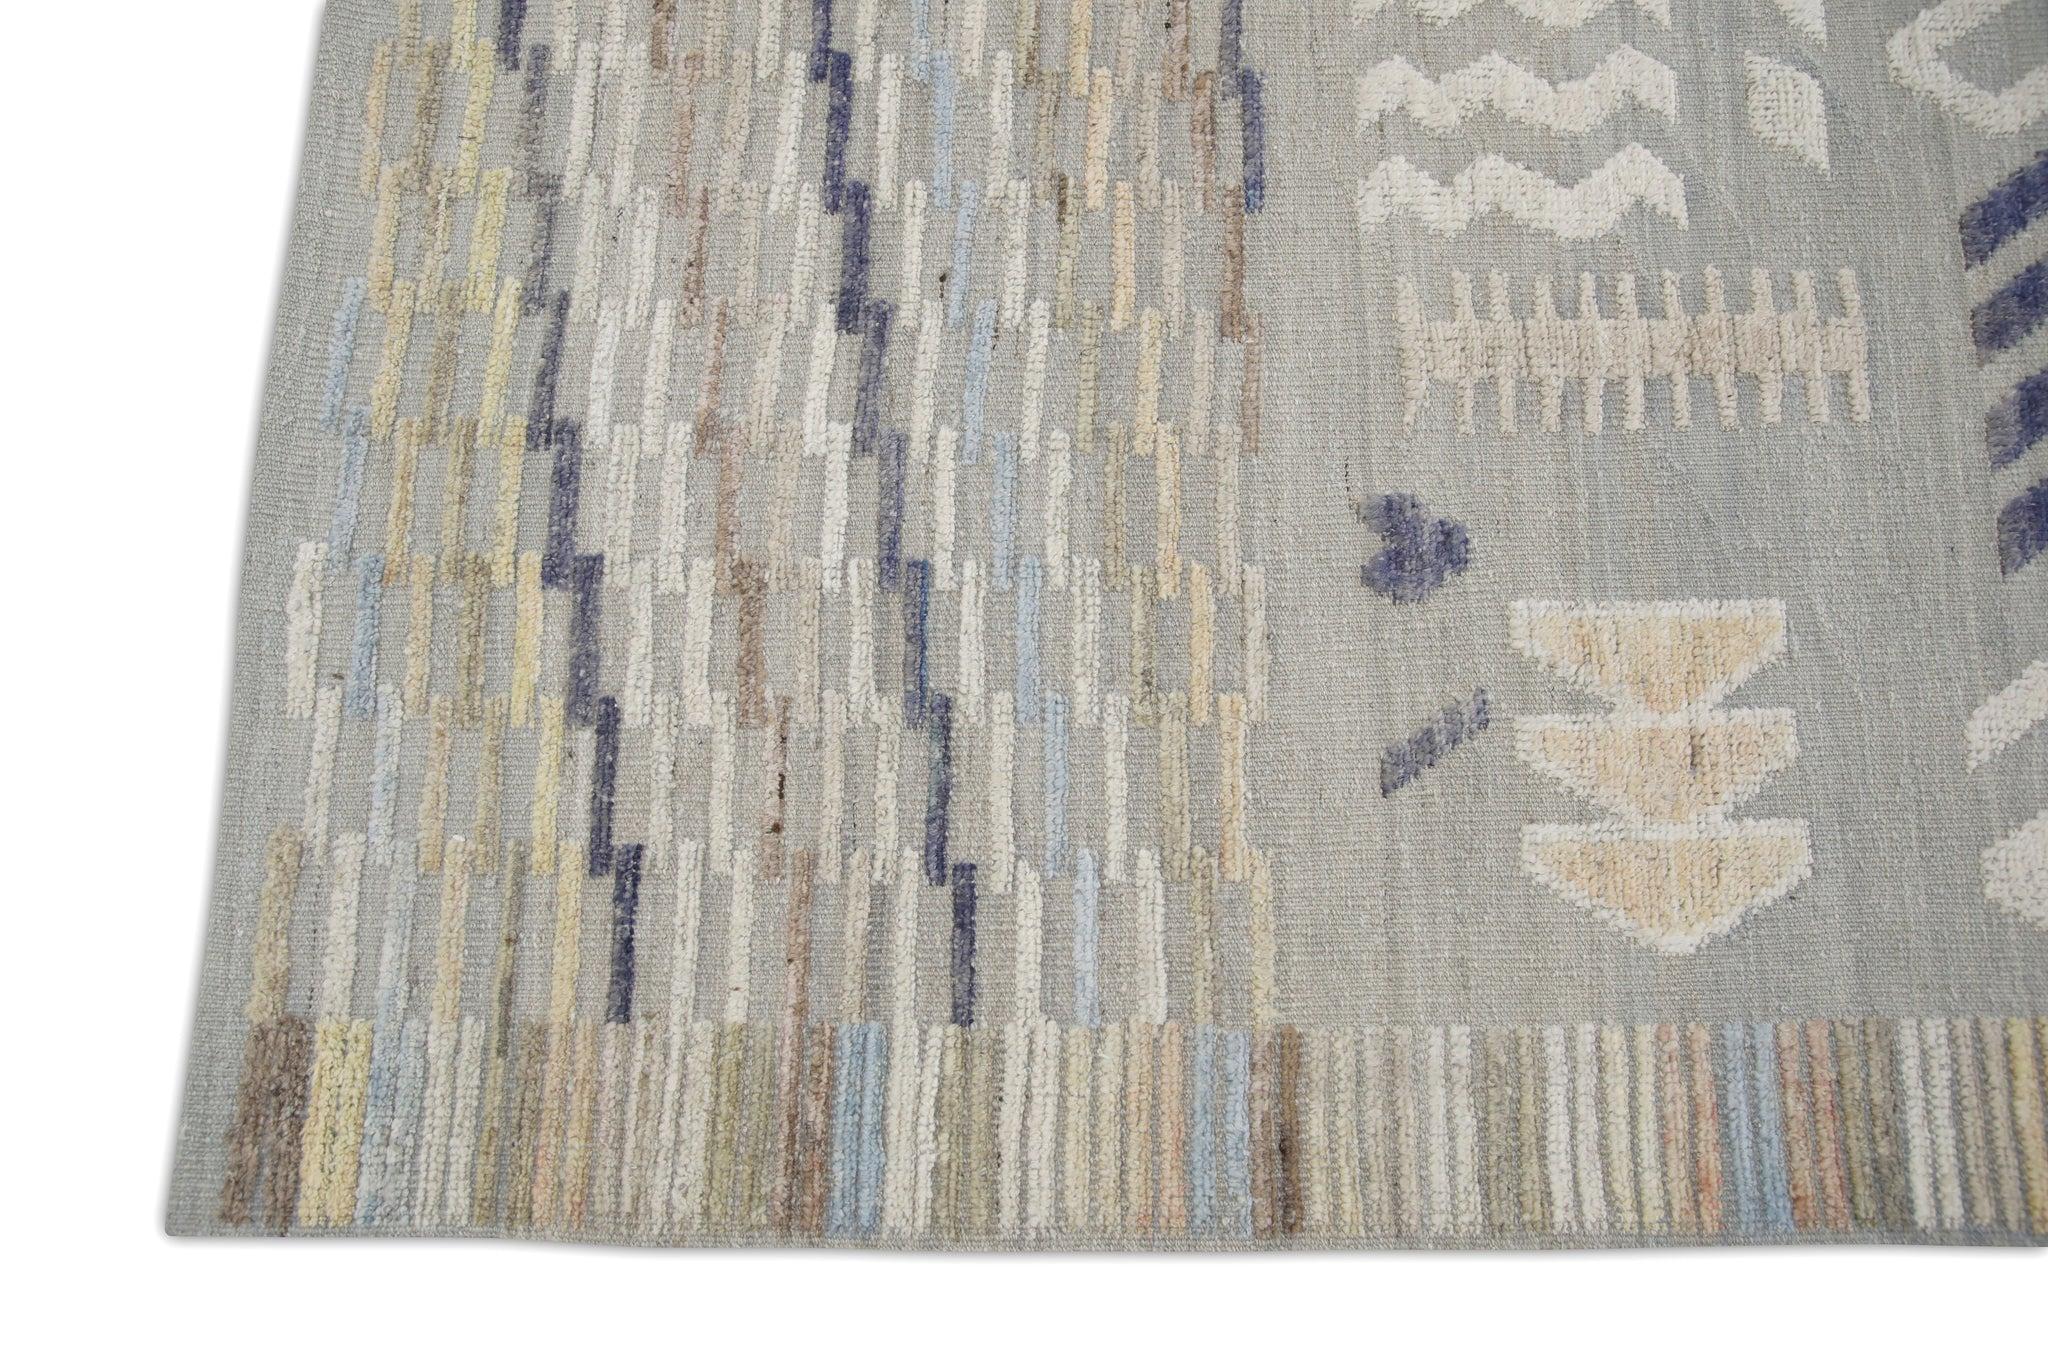 Turkish Blue Multicolor Geometric Design Flatweave Handmade Wool Rug 8'5